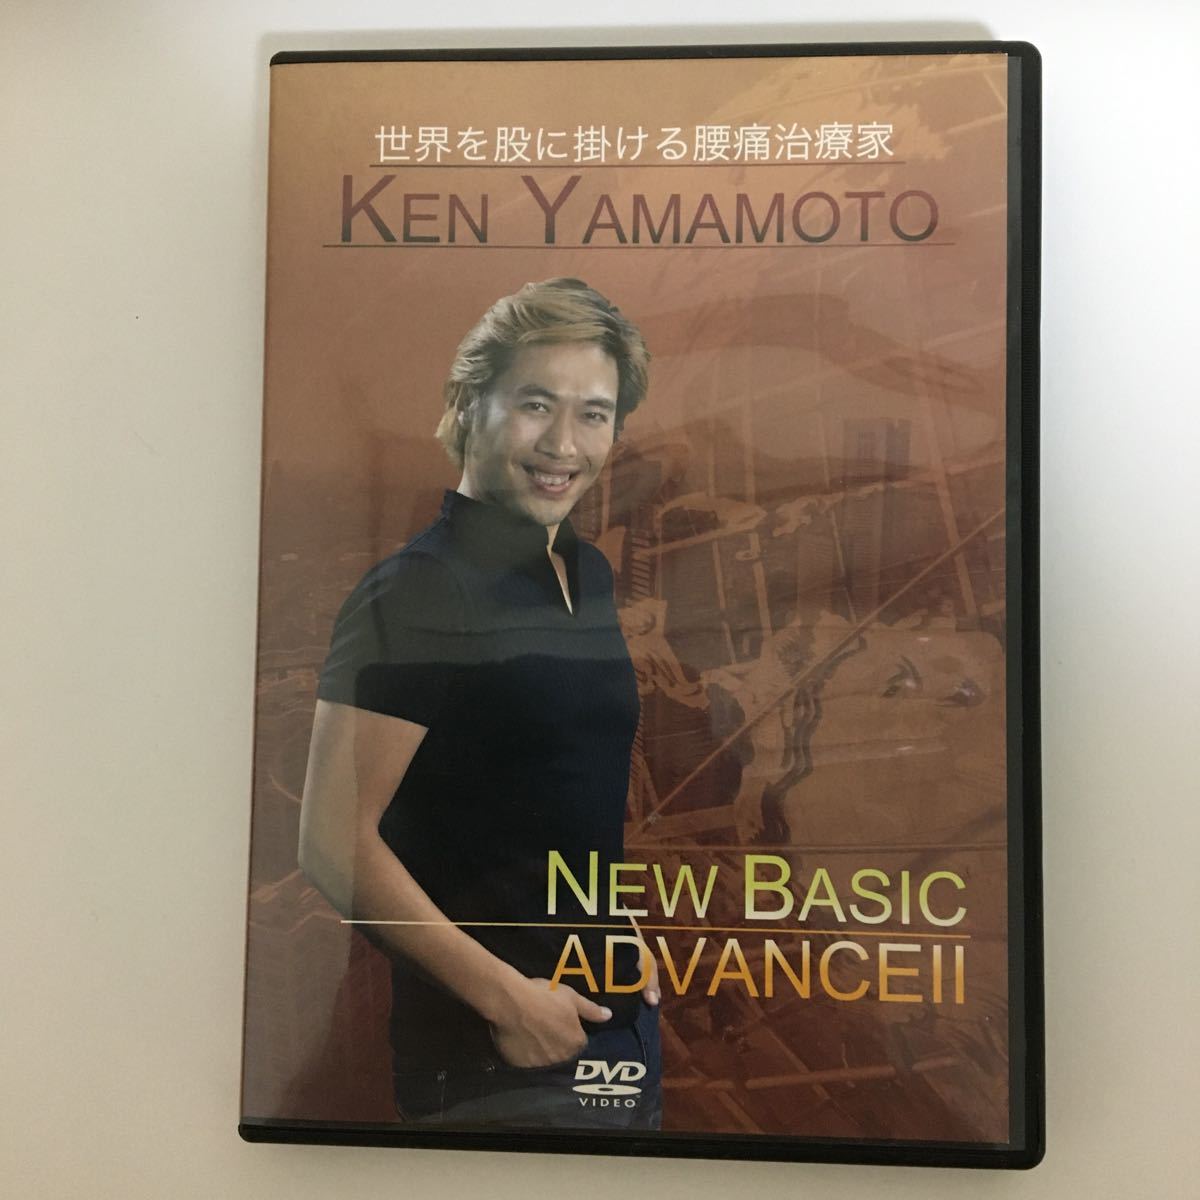 日本初の-Ken Yamamoto Technique Level 7 DVD - lab.comfamiliar.com